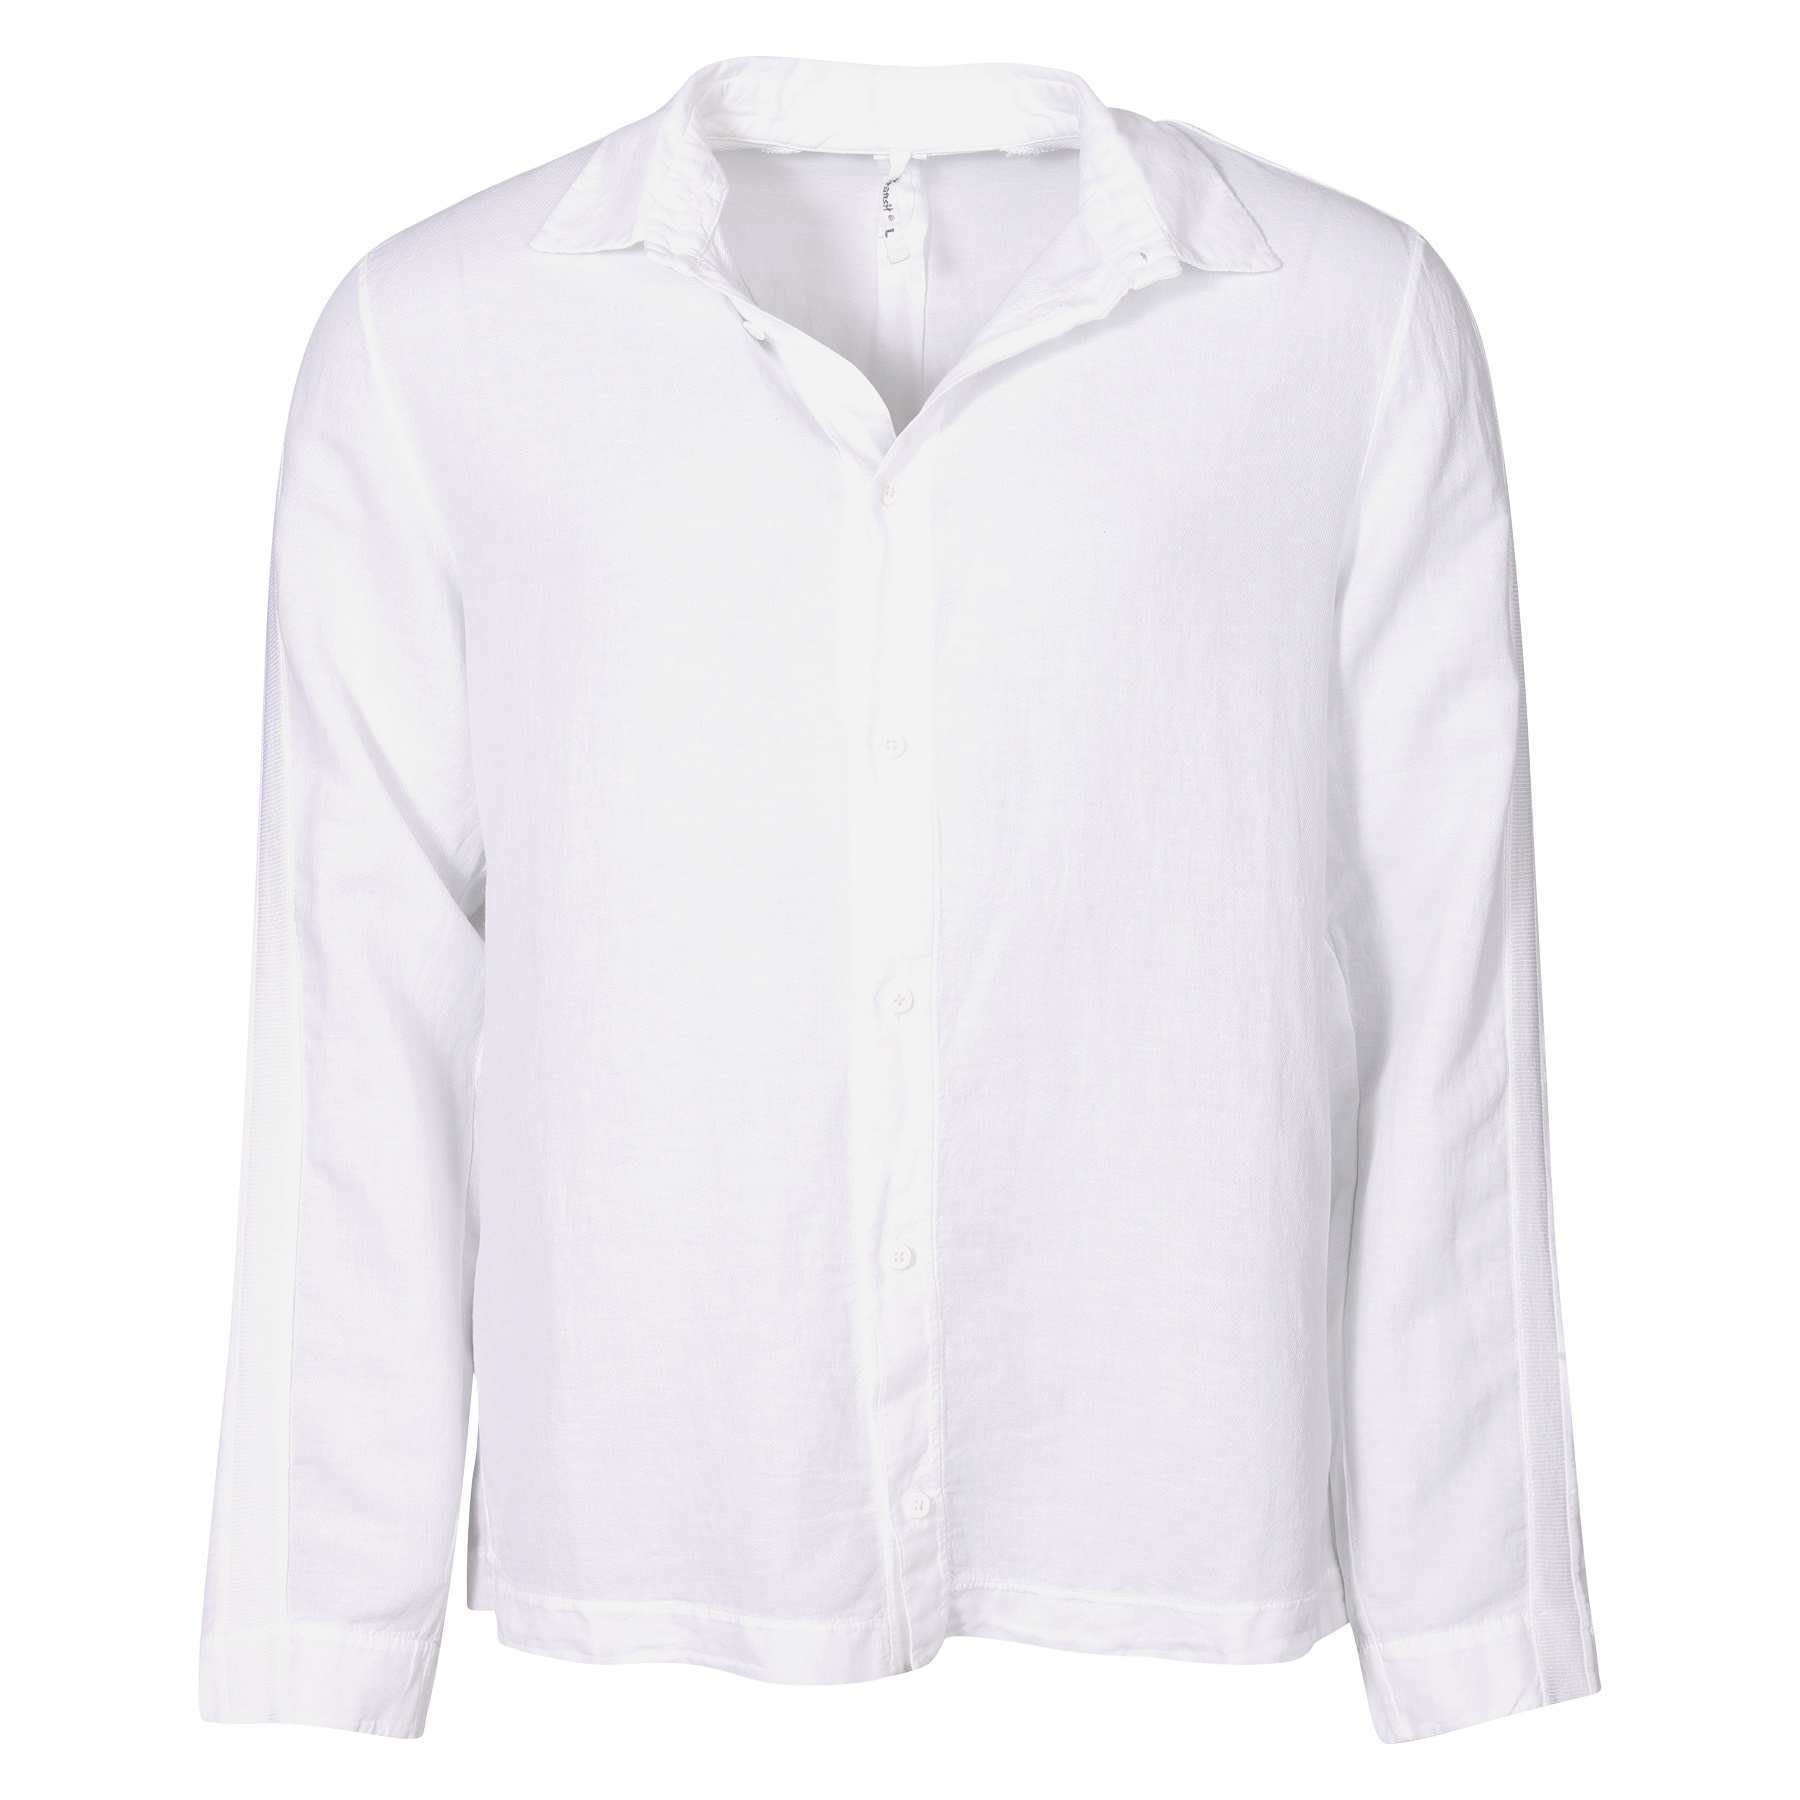 TRANSIT UOMO Cotton Linen Shirt in White 2XL